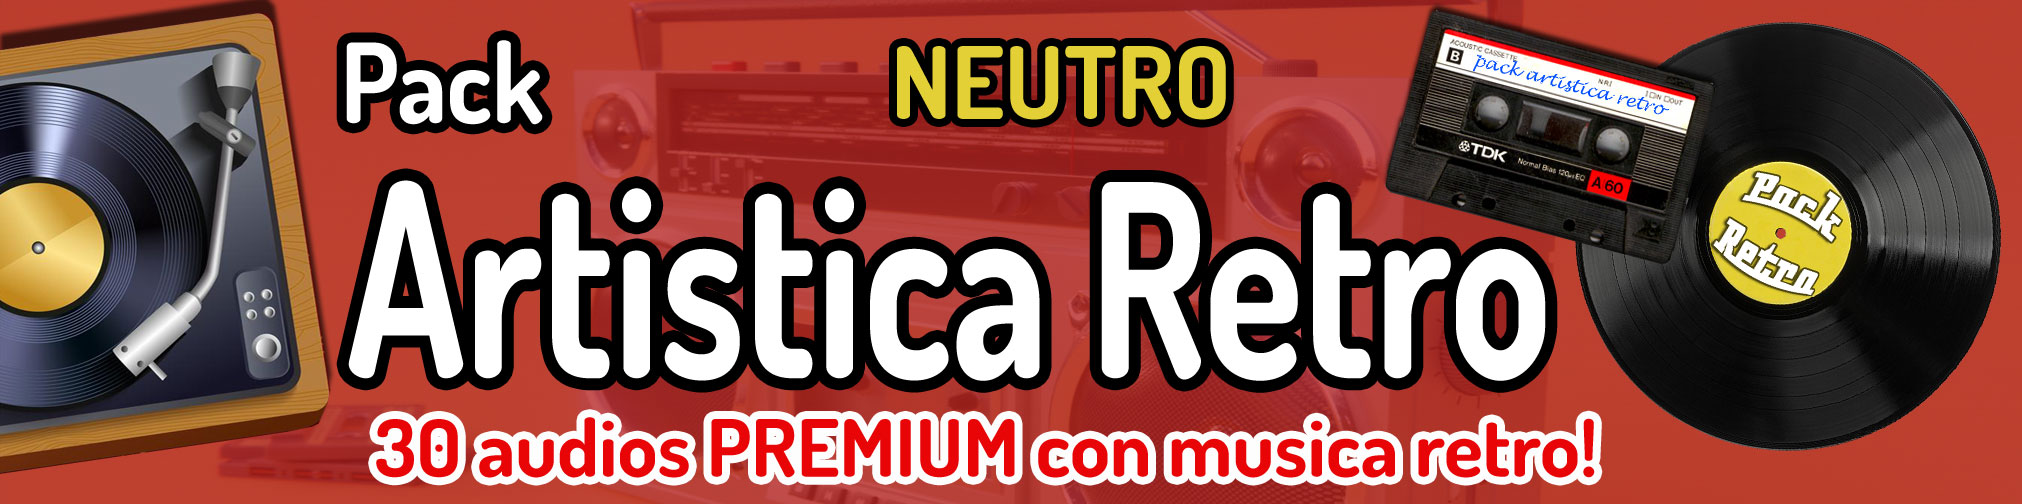 Artistica Retro NEUTRO 30 audios